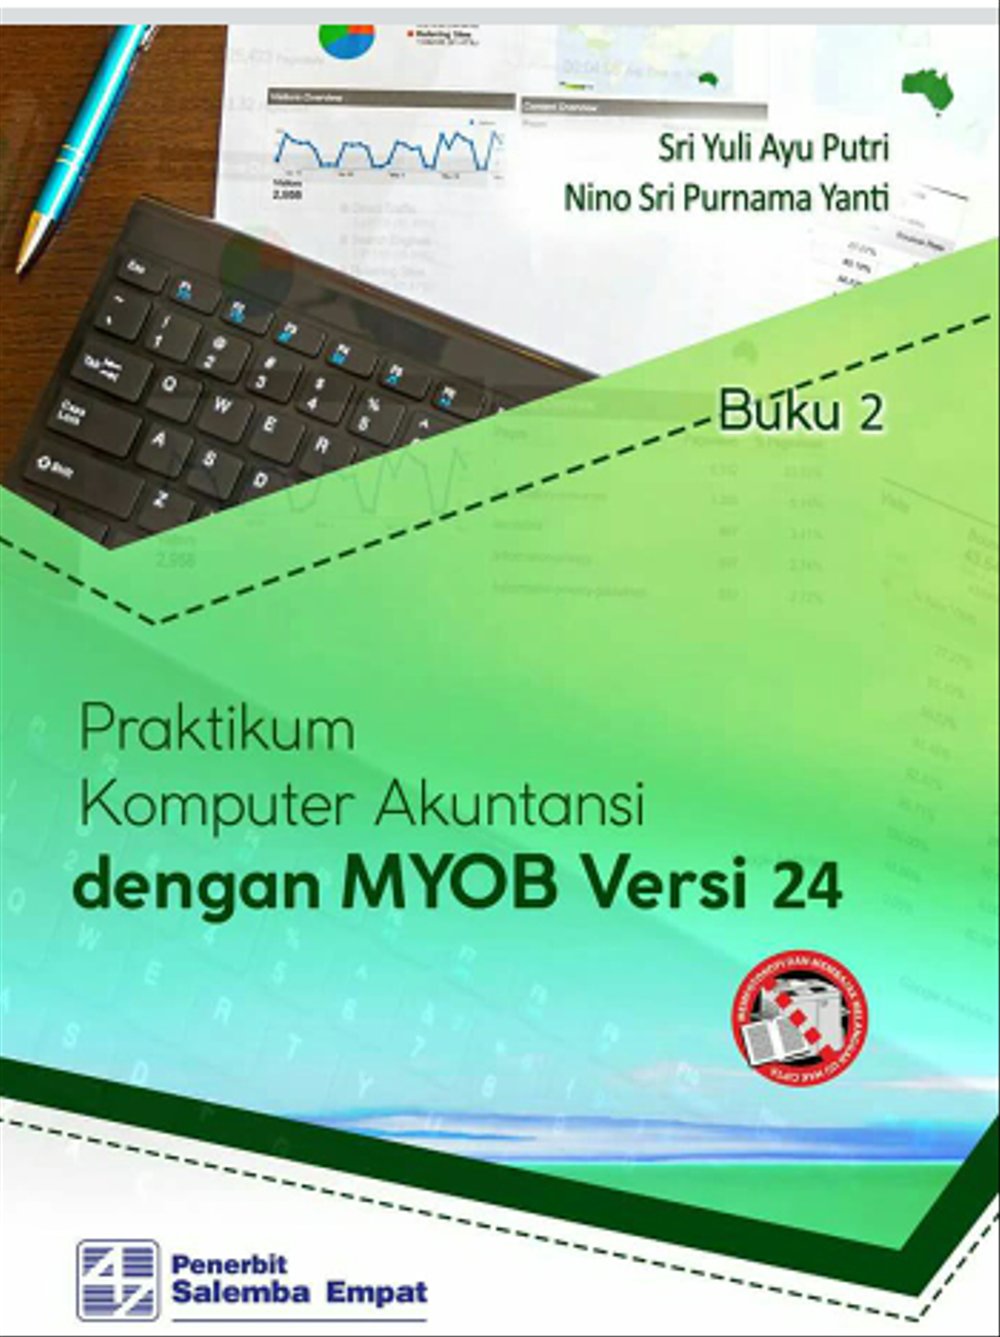 Praktikum Komputer Akuntansi dengan MYOB Versi 24 ; Buku 2.